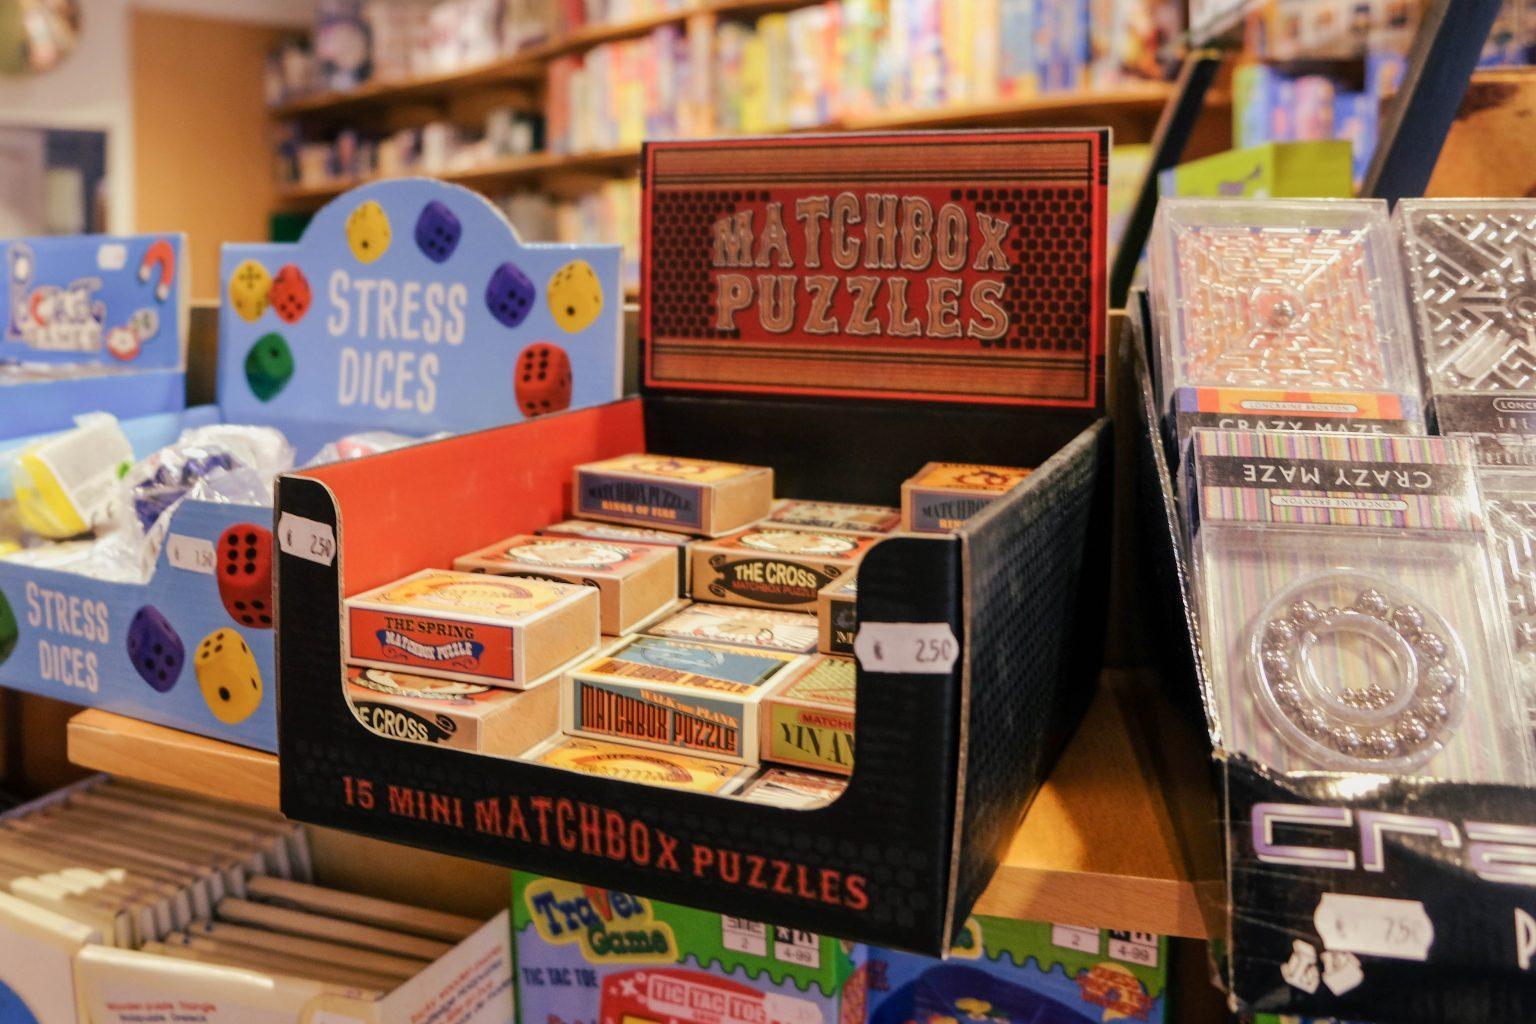 wir-war-spellen-en-puzzels-matchbox-puzzles-oude-kijk-in-t-jatstraat-40-groningen